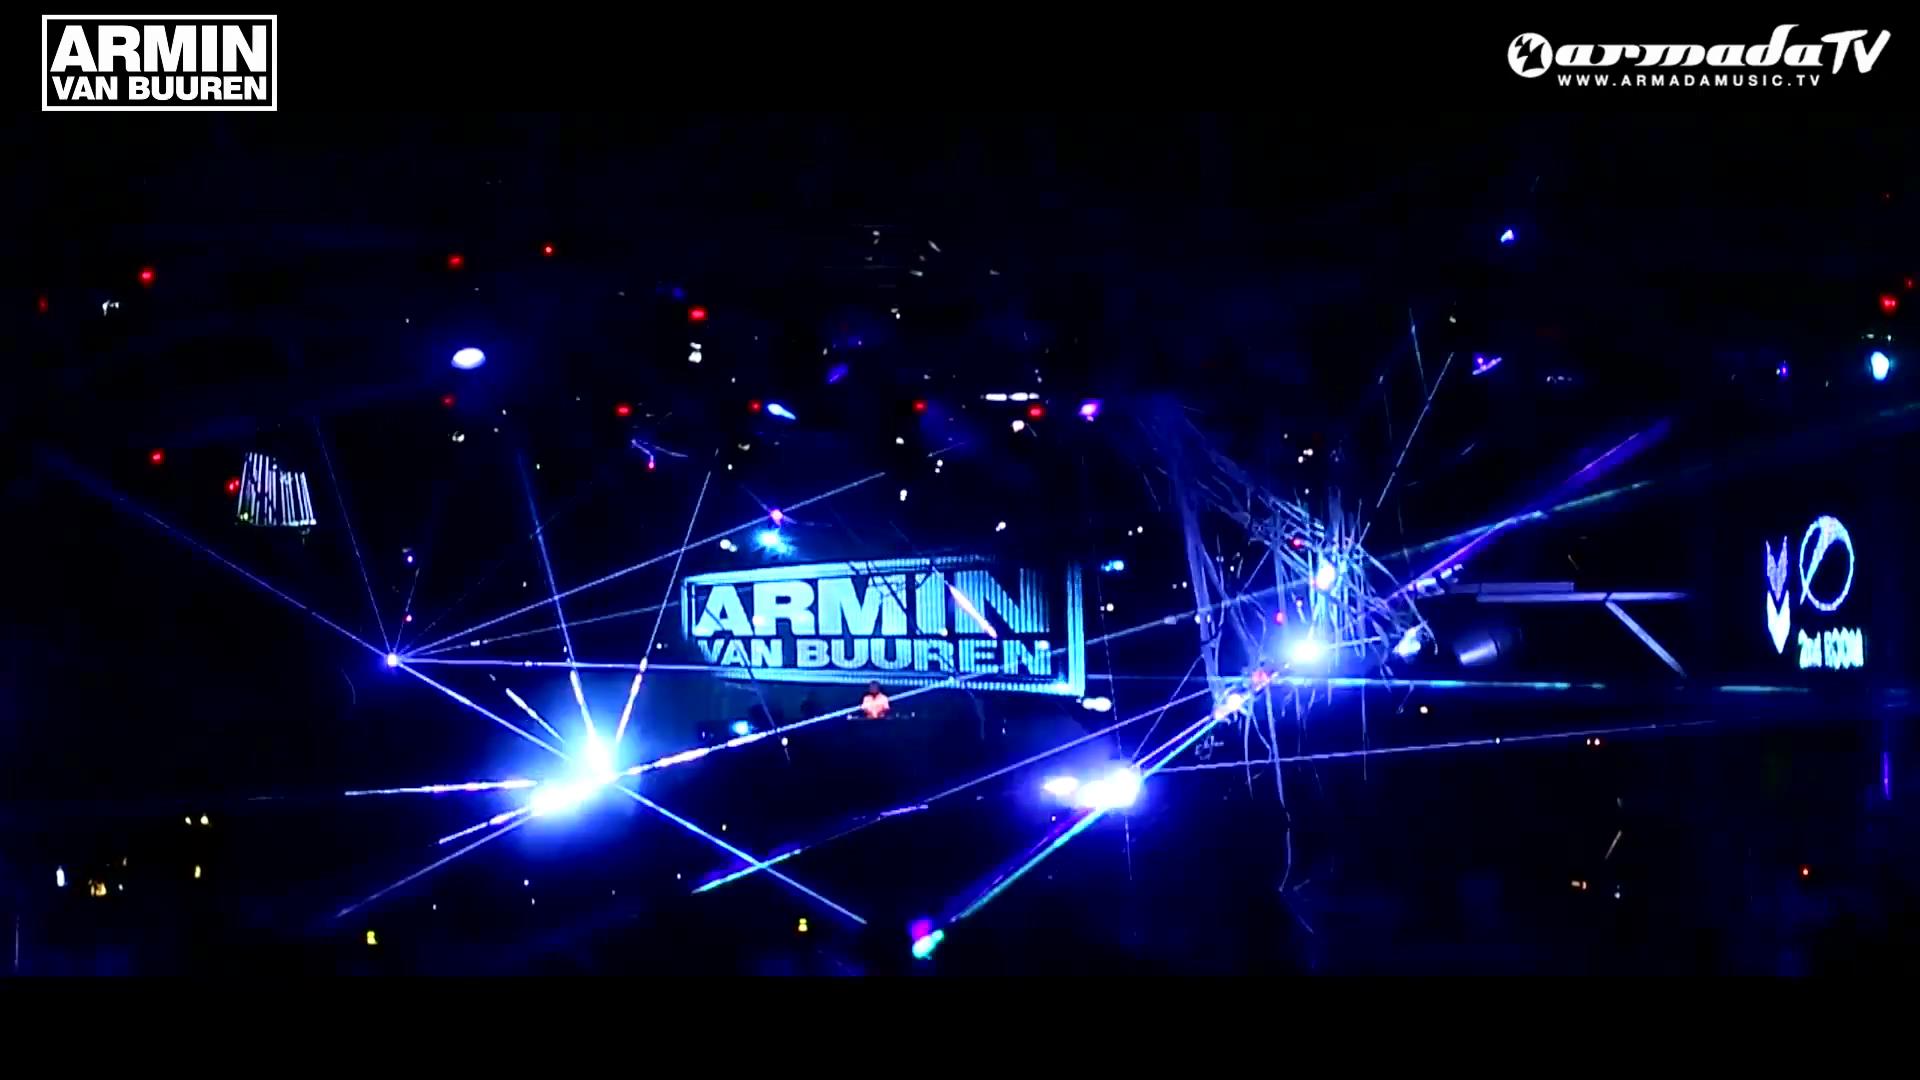 Armin Van Buuren Wallpaper Background Image